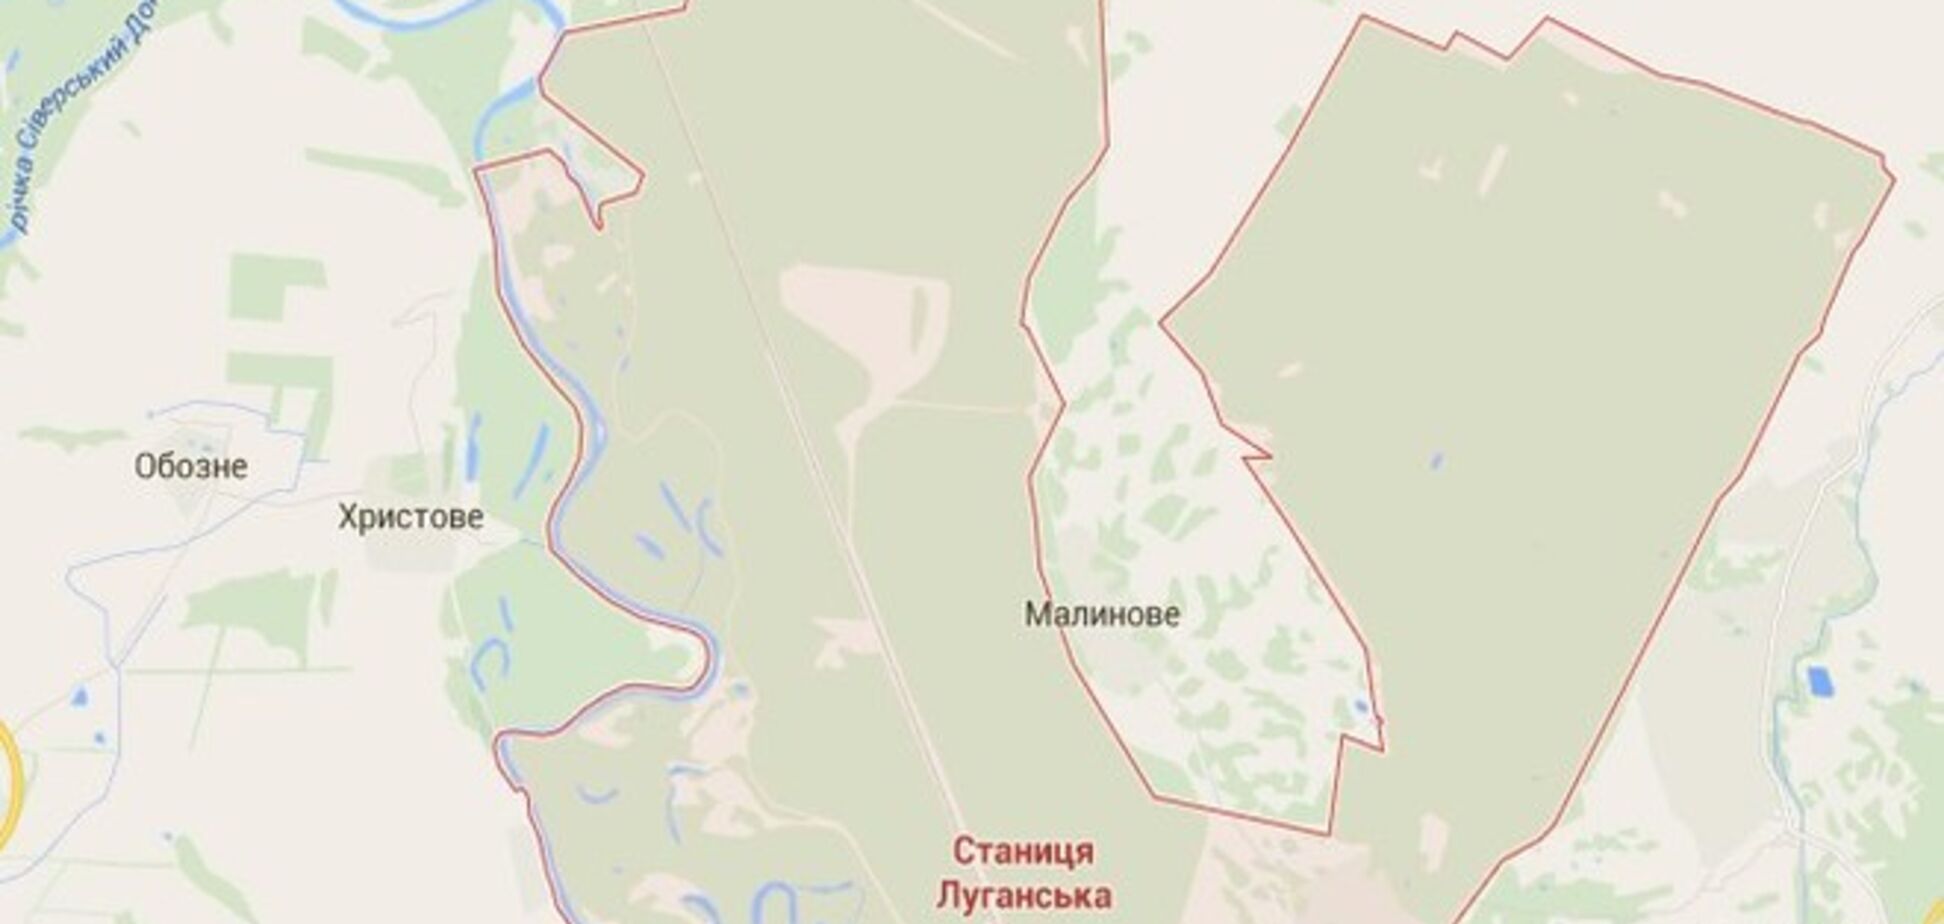 У Станиці Луганської бойовики потрапили під шквальний вогонь, намагаючись переправитися через річку